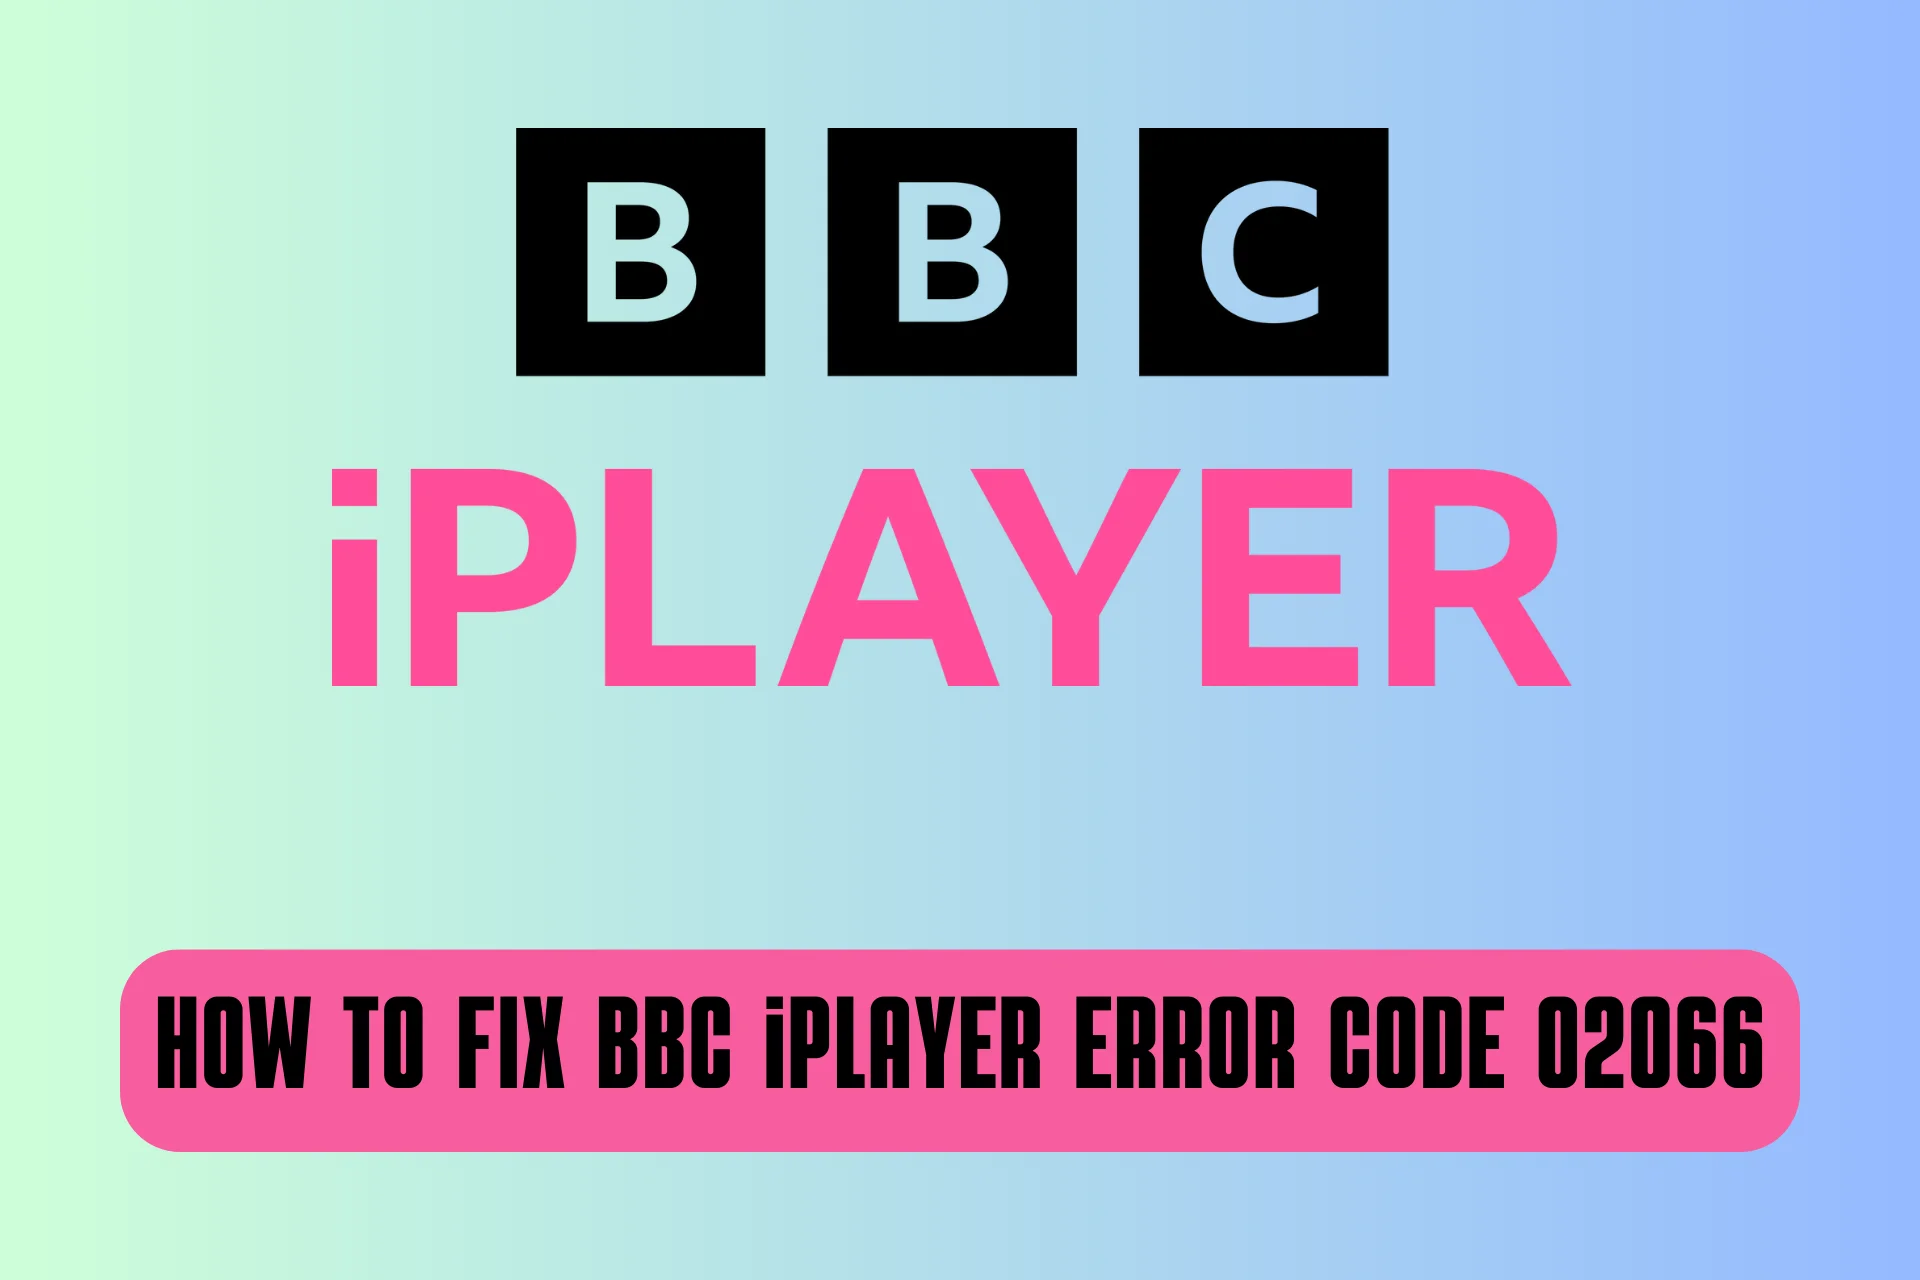 bbc iplayer error code 02066